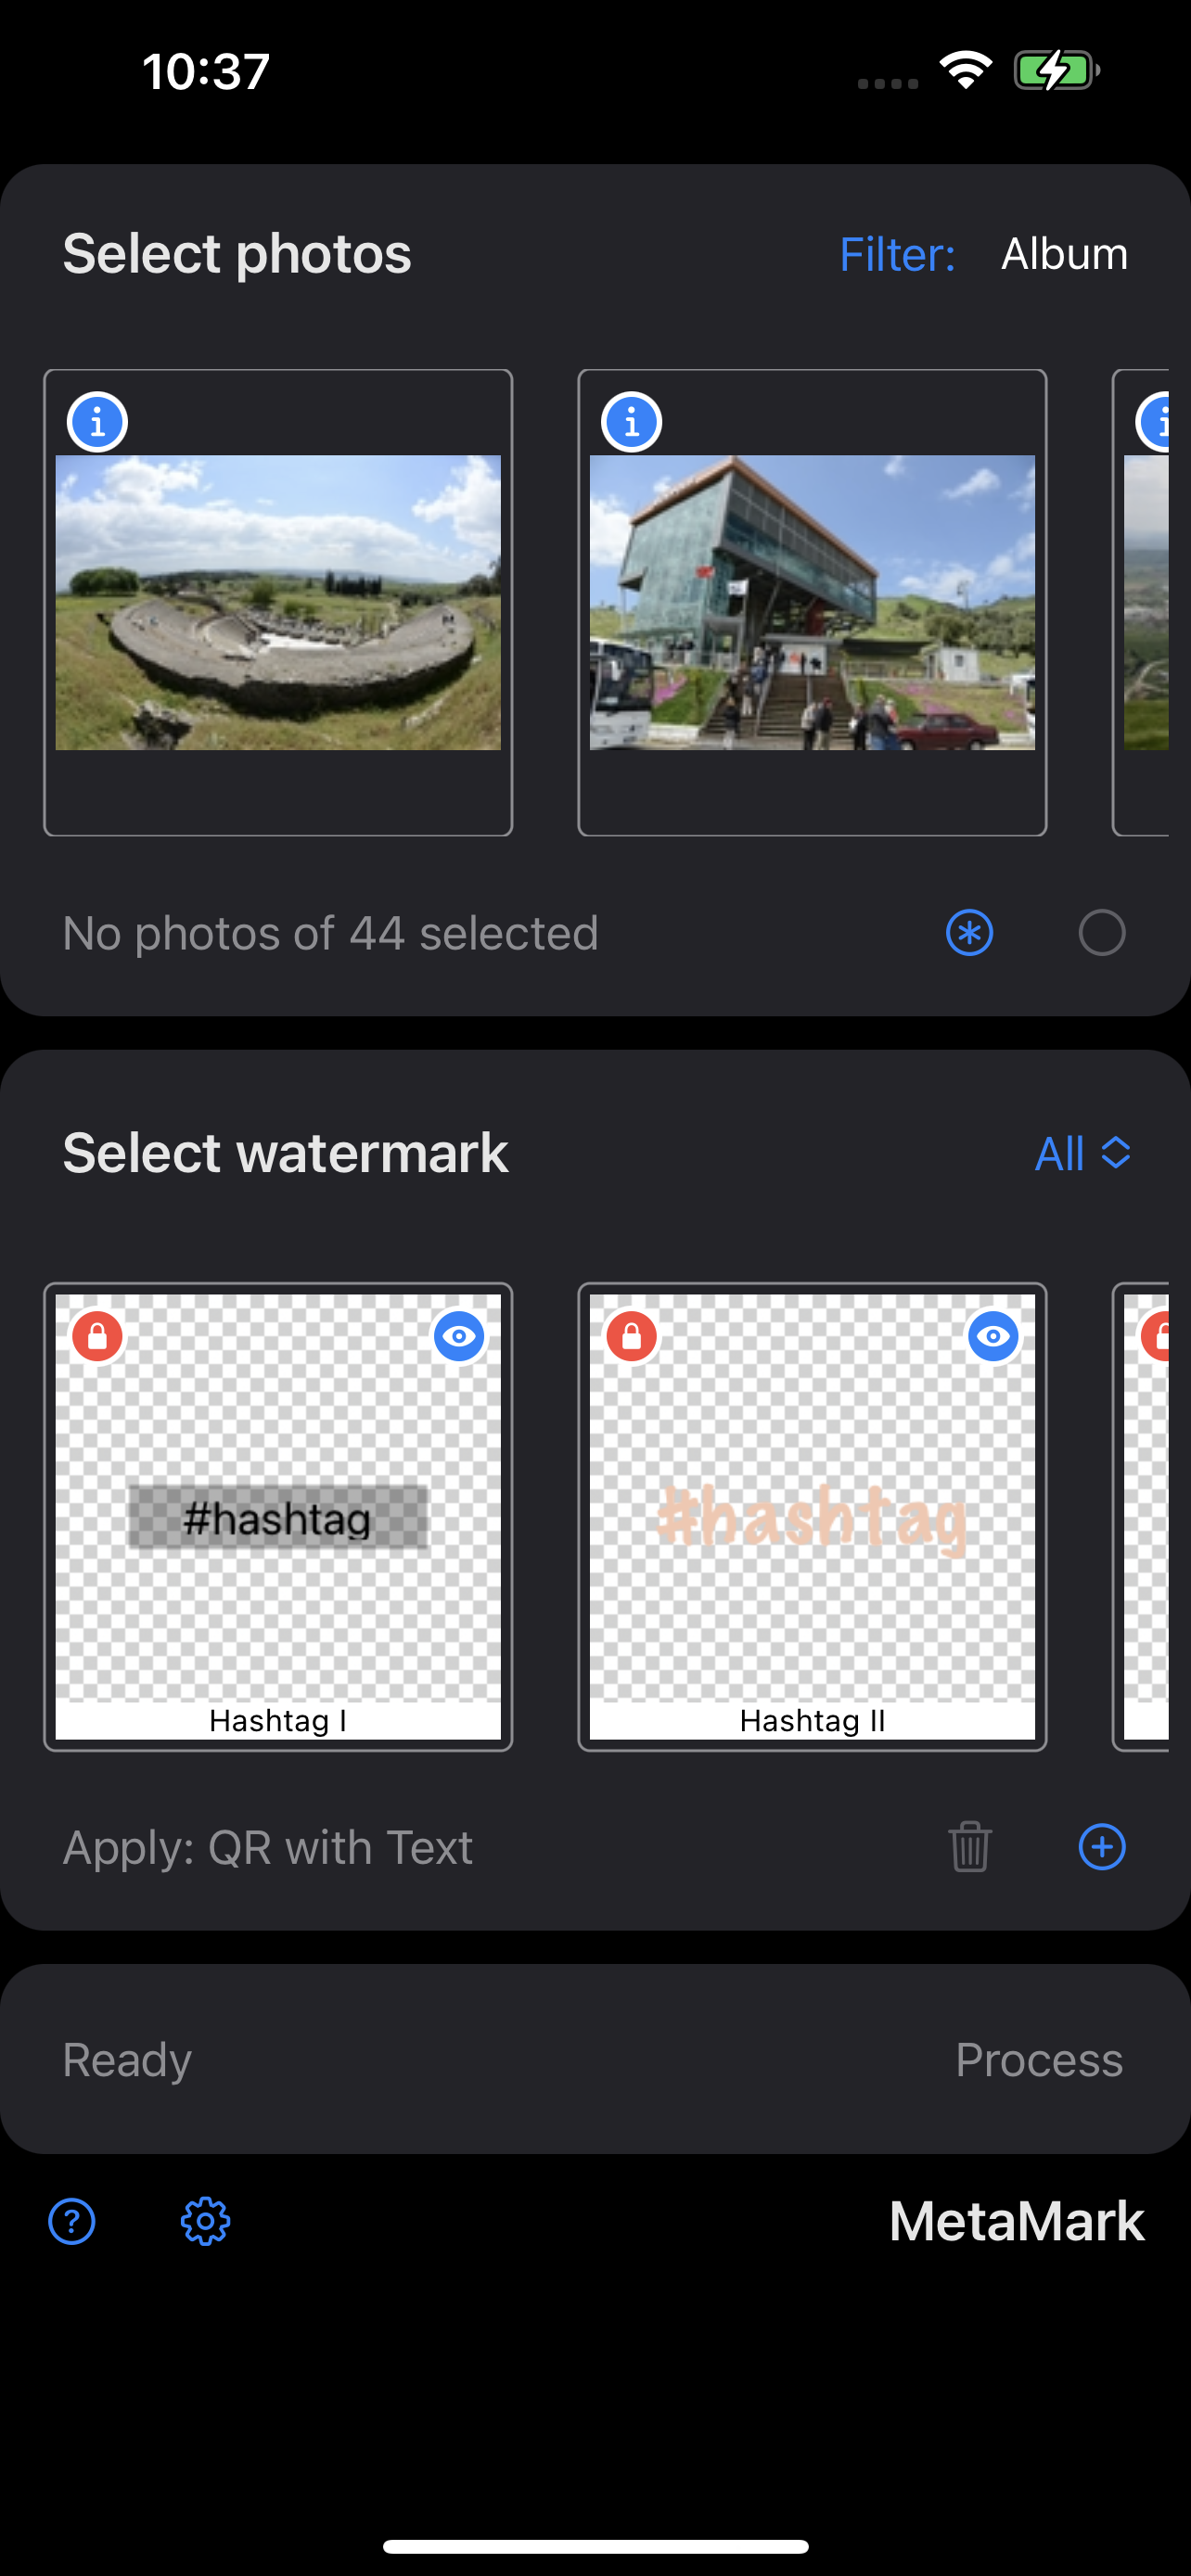 MetaMark Watermark Photos on iPhone Watermark Templates Predefined